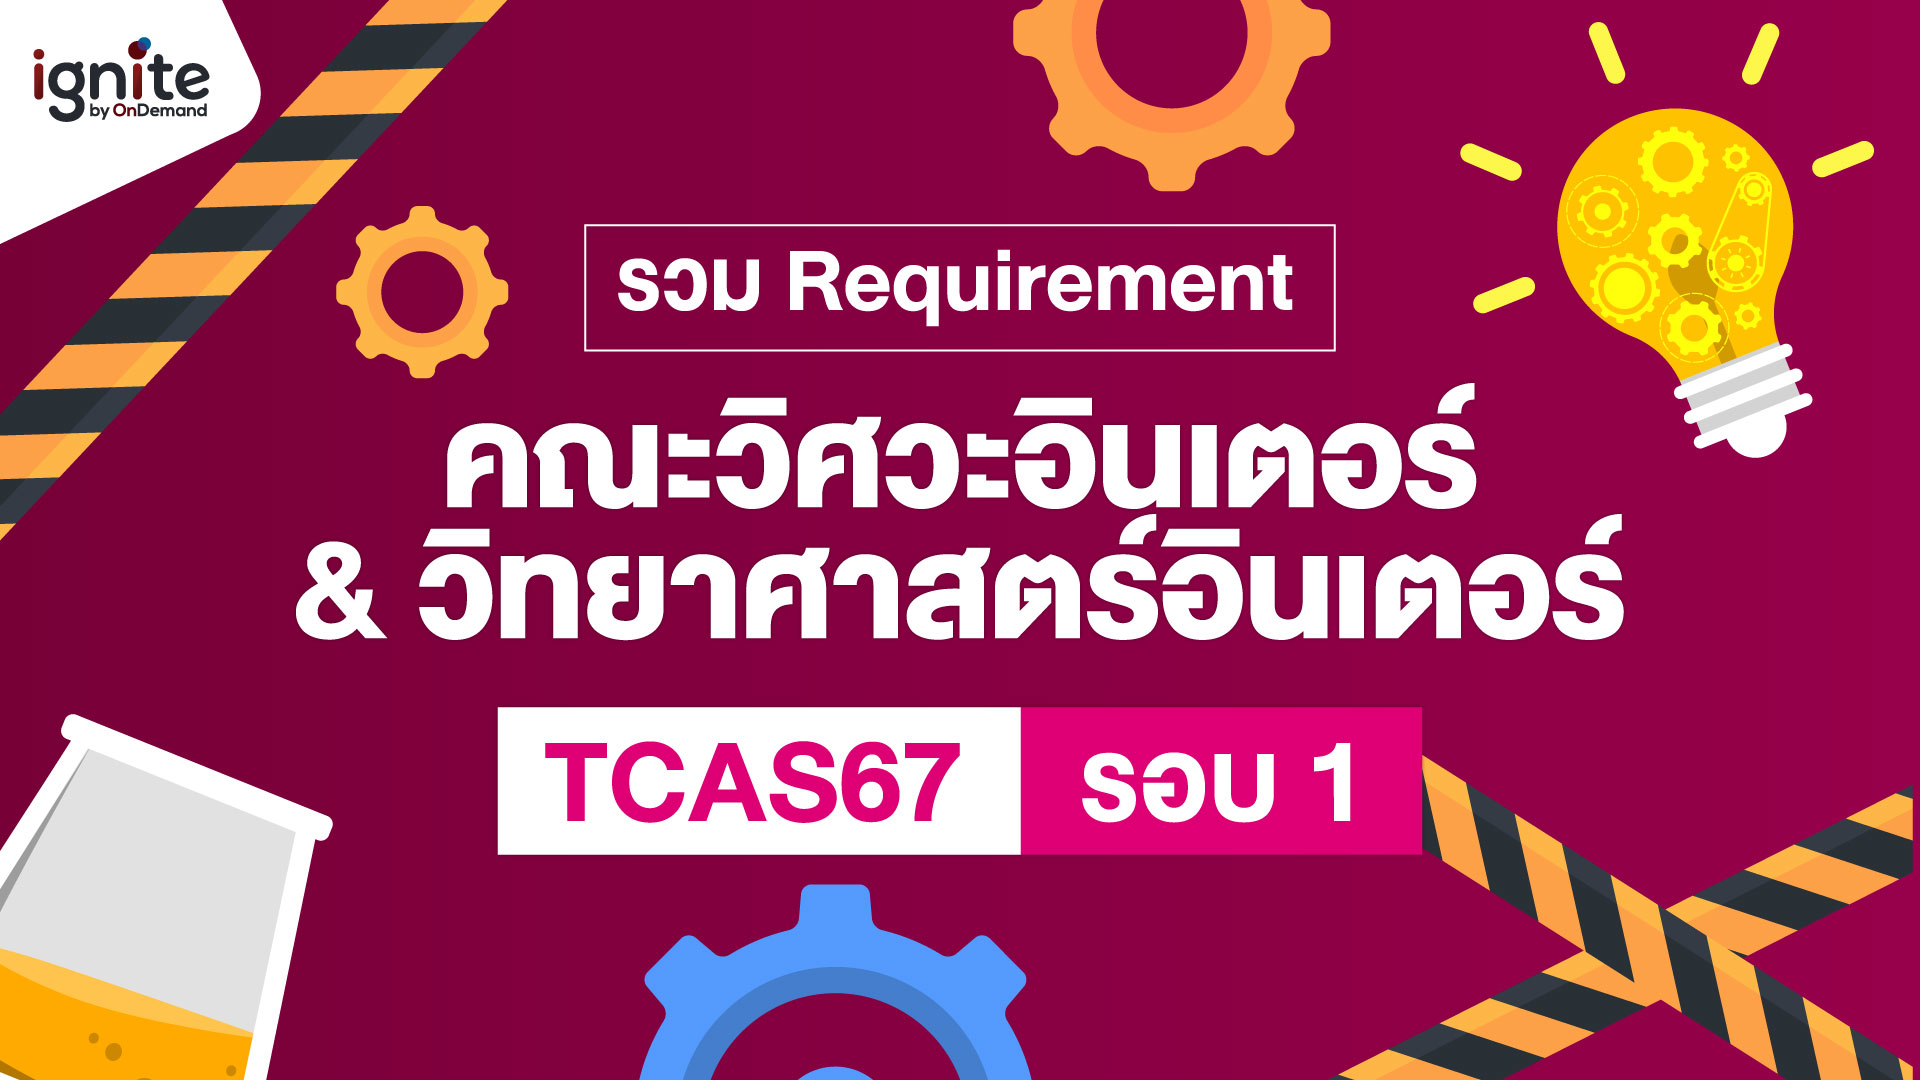 รวม Requirement คณะวิศวกรรมศาสตร์ วิทยาศาสตร์ อินเตอร์ TCAS67 รอบ 1